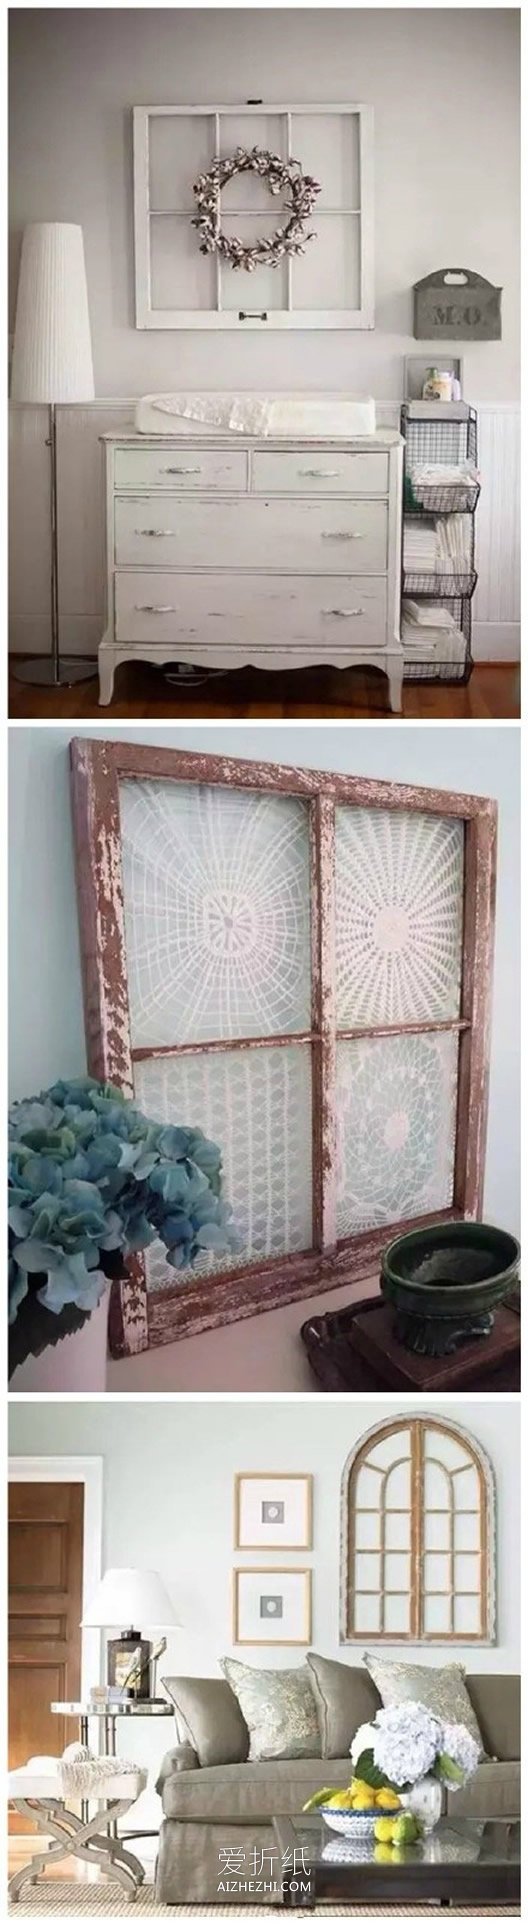 怎么改造旧窗框图片 旧窗户改造家居装饰品- www.aizhezhi.com